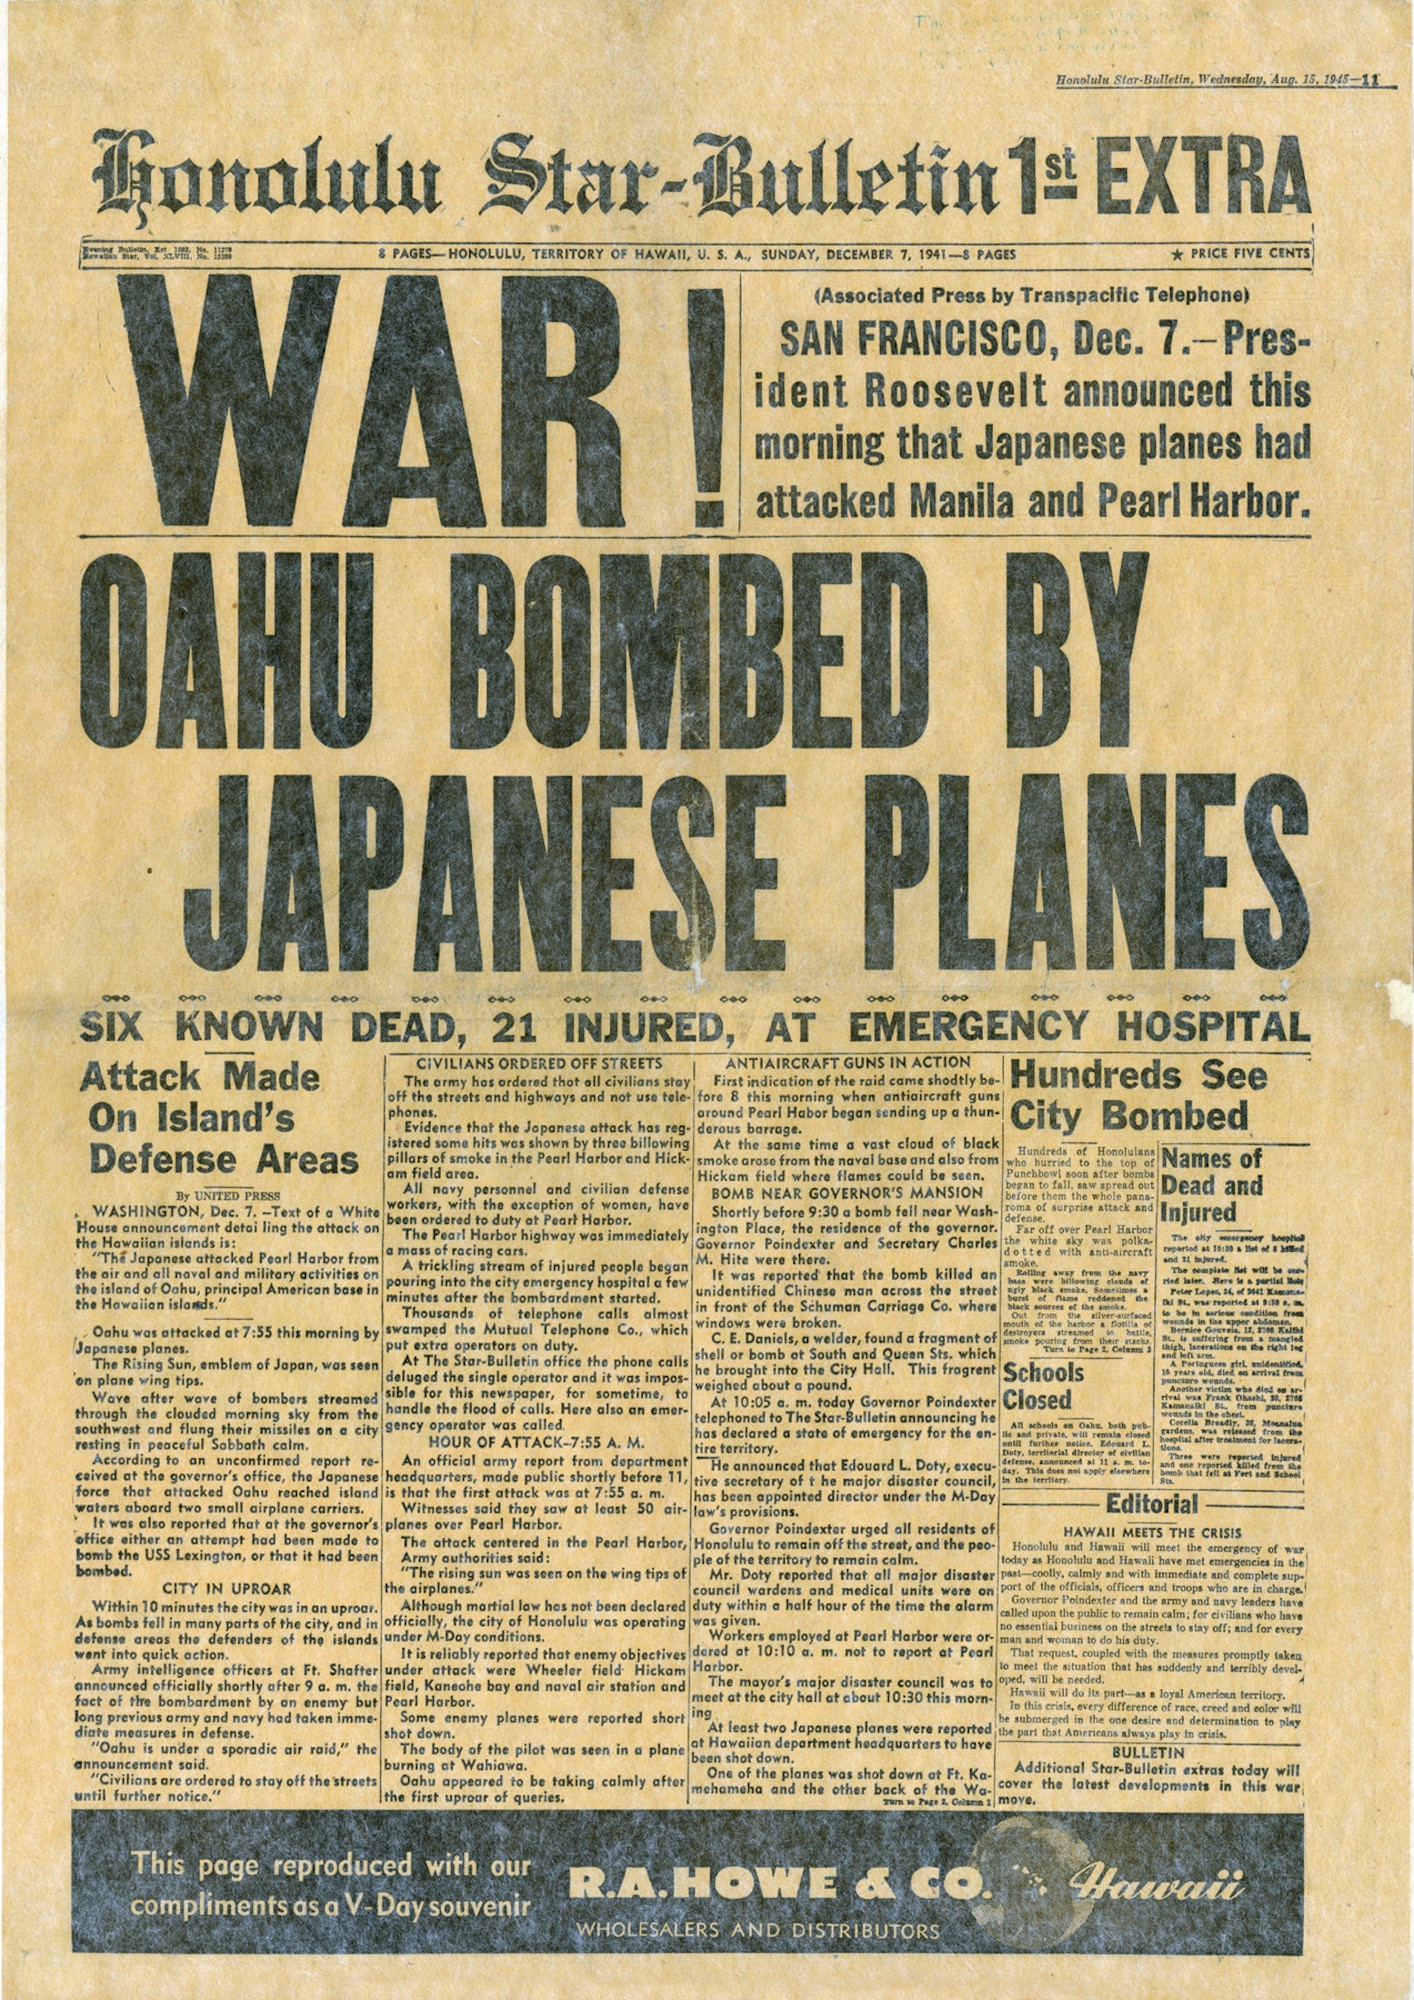 Pearl Harbor attacks 77 years